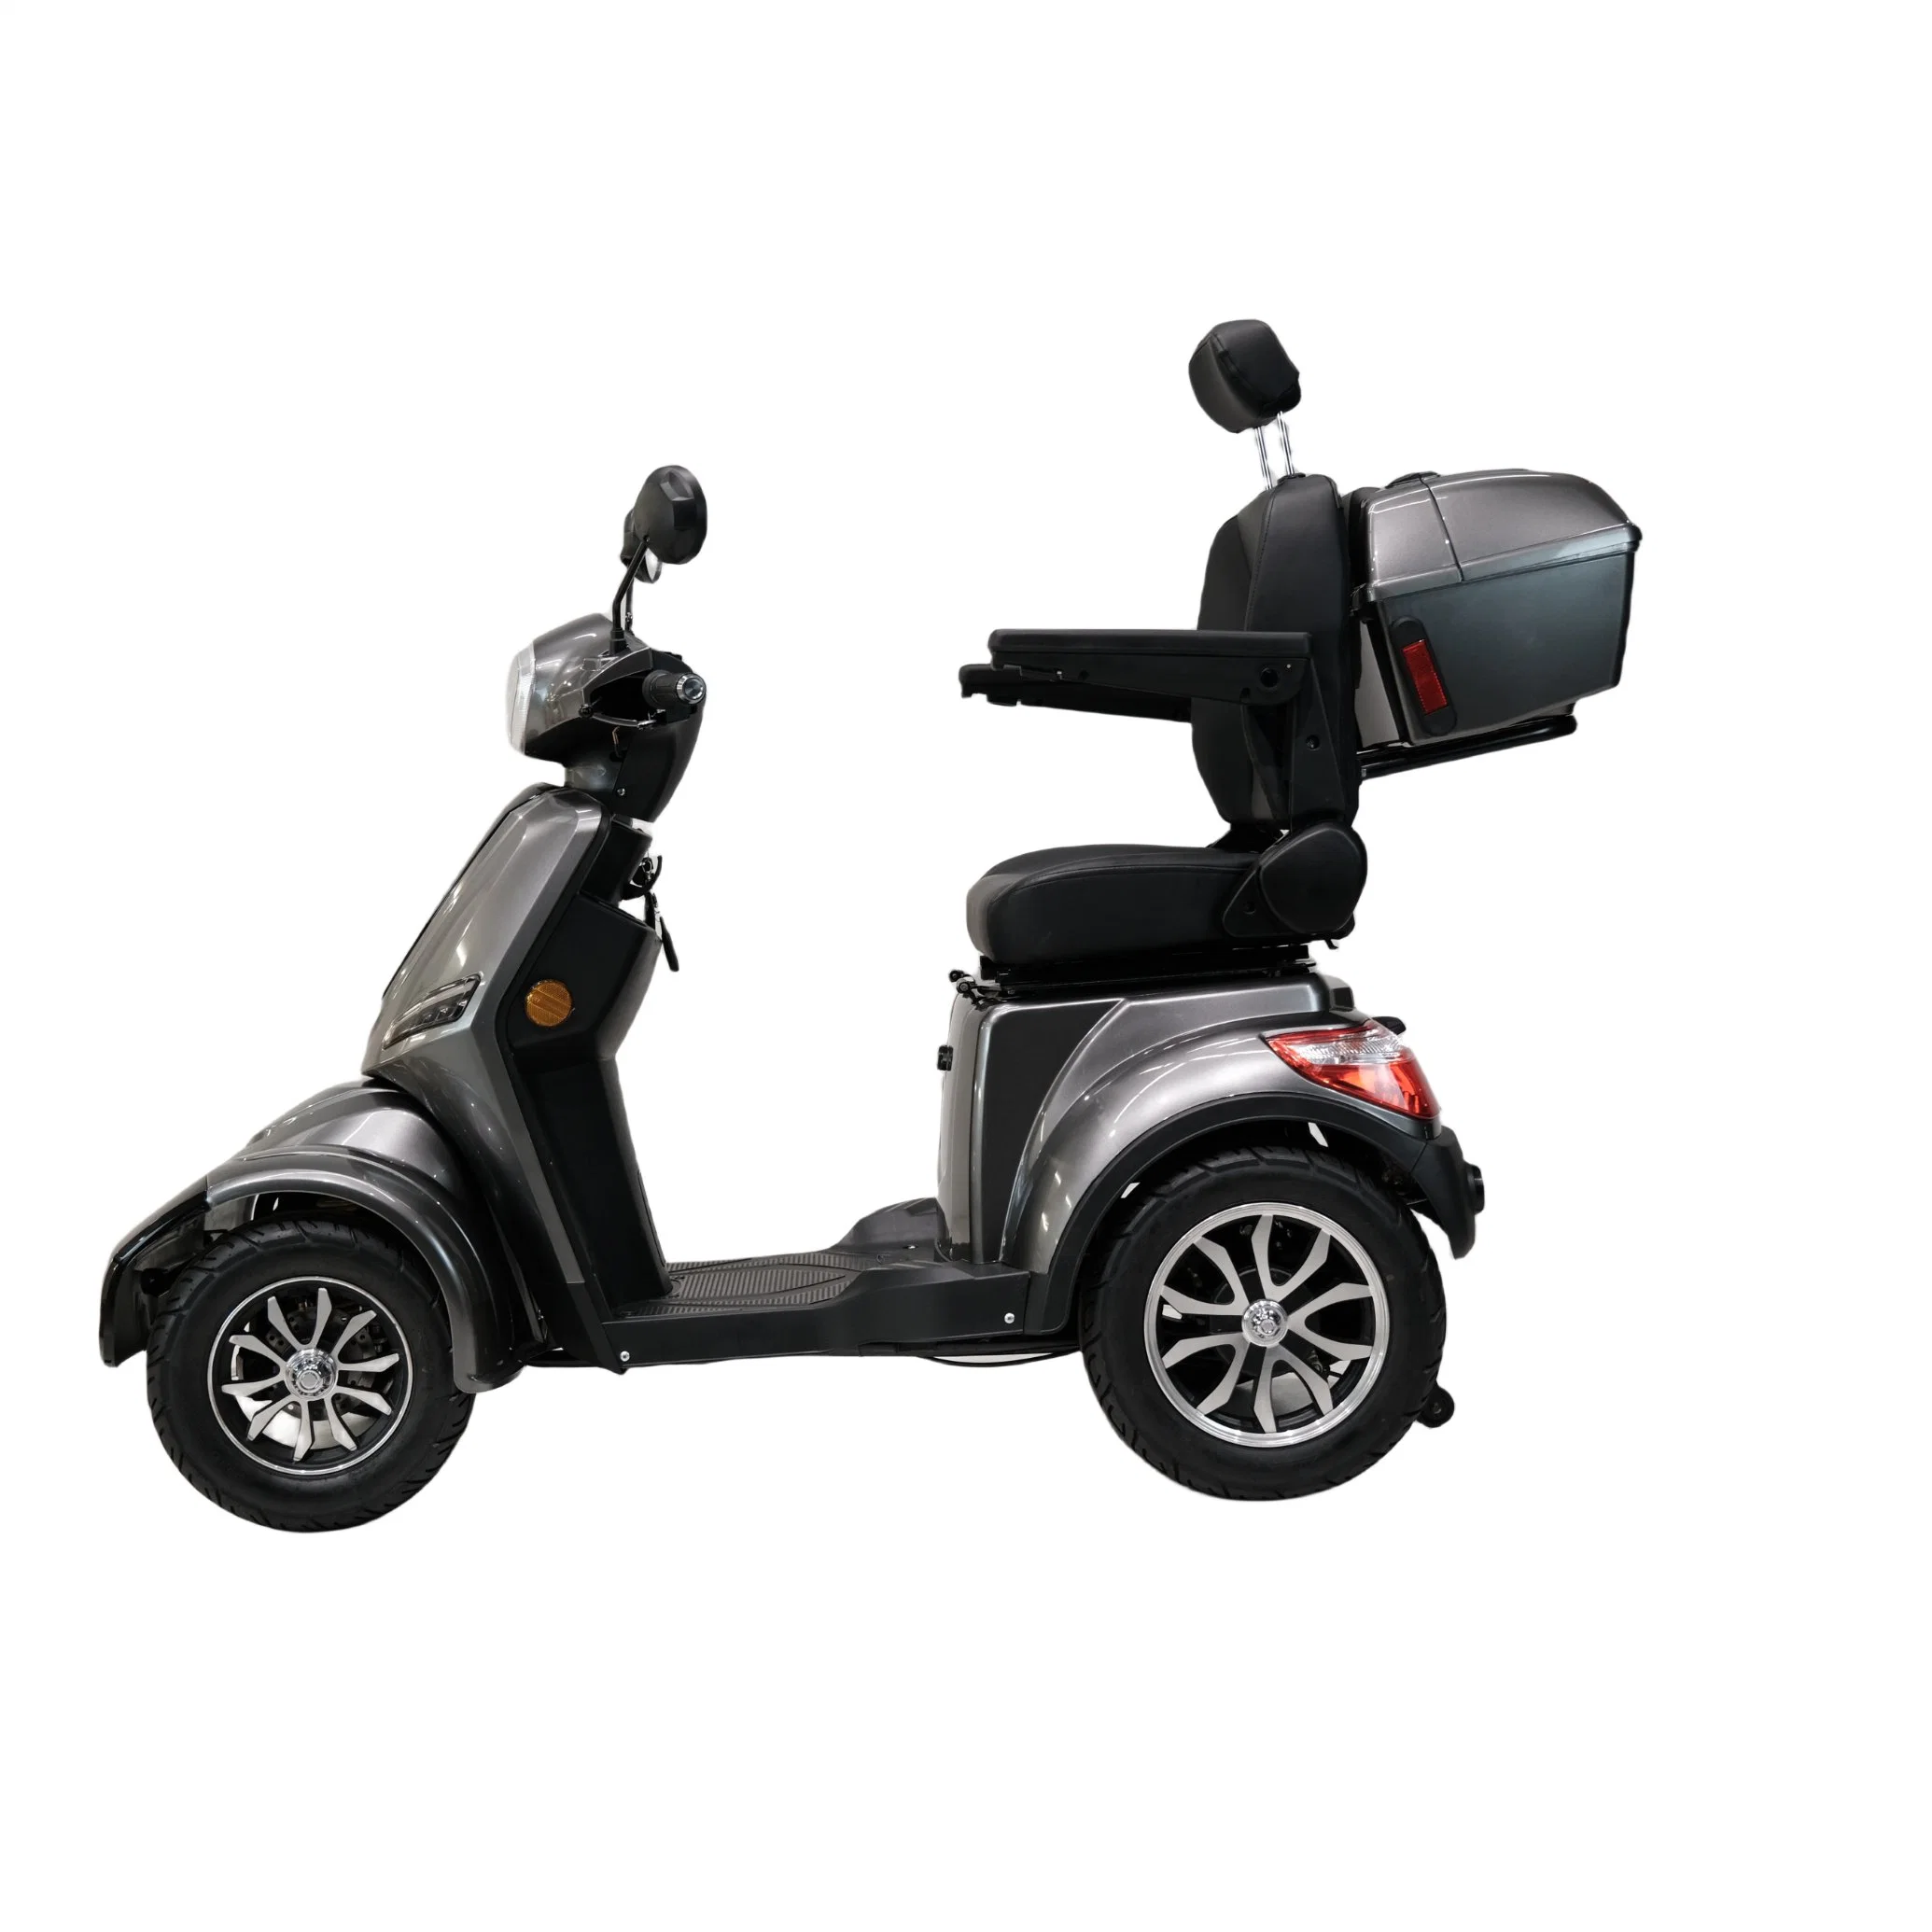 Heißer Verkauf 4 Rad Stadt Mobilität Fahrzeug mit besten Preis Tragbare Mobilität Elektro-Scooter Behinderung bequem zu Älteren